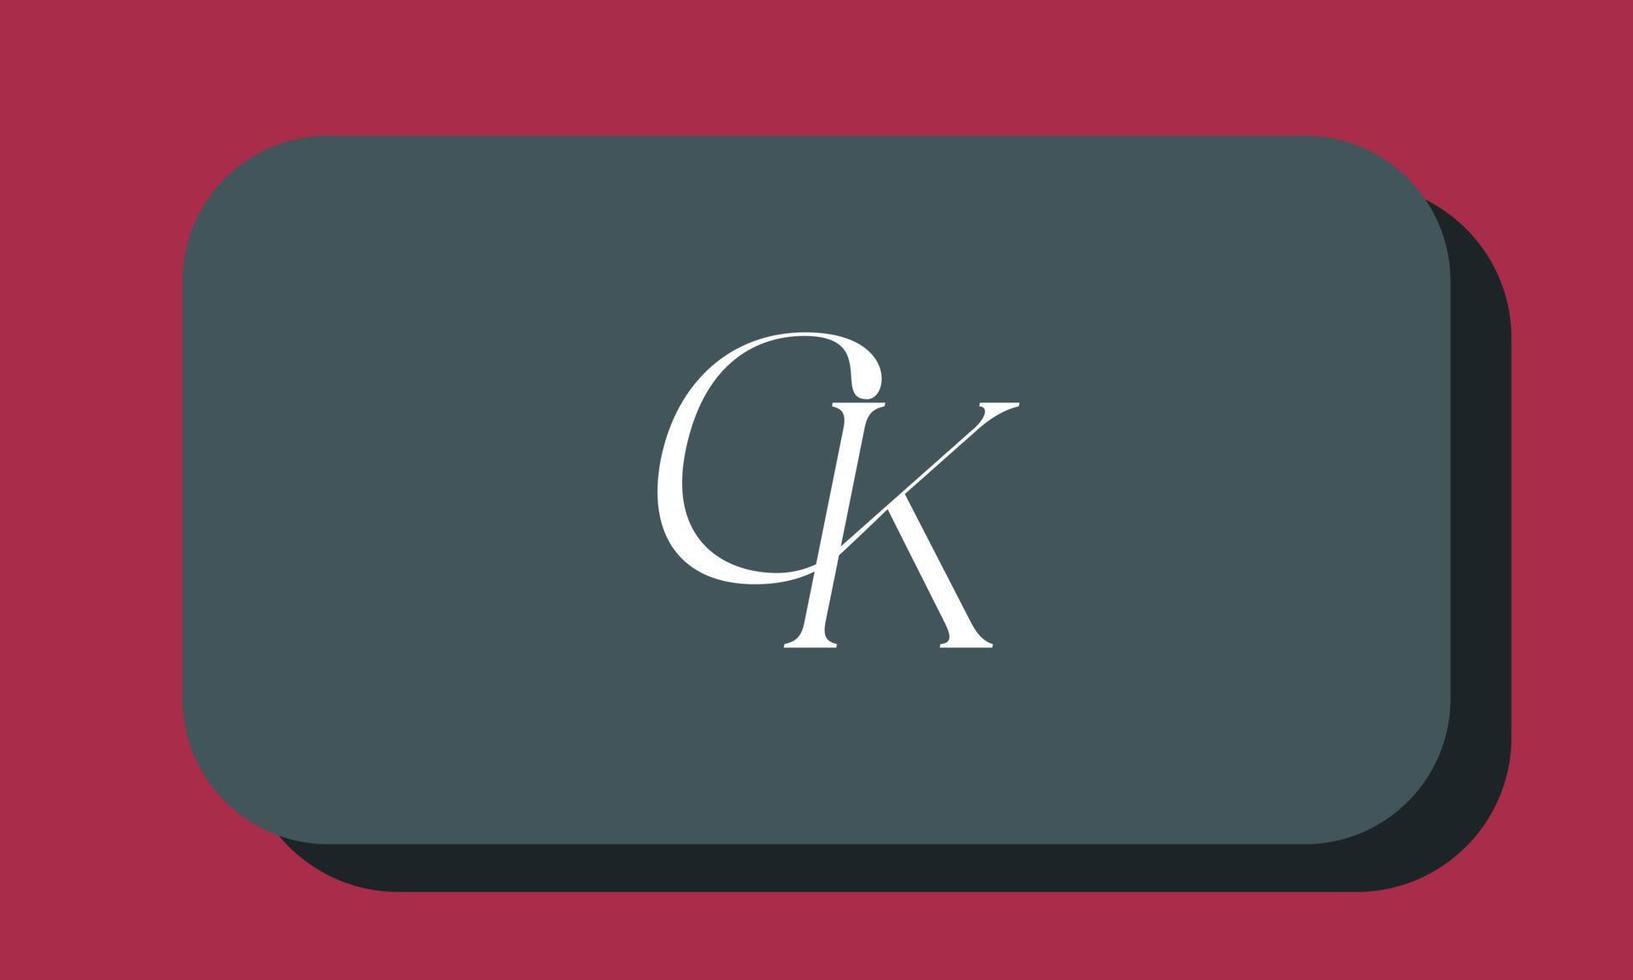 alfabeto lettere iniziali monogramma logo ck, kc, c e k vettore